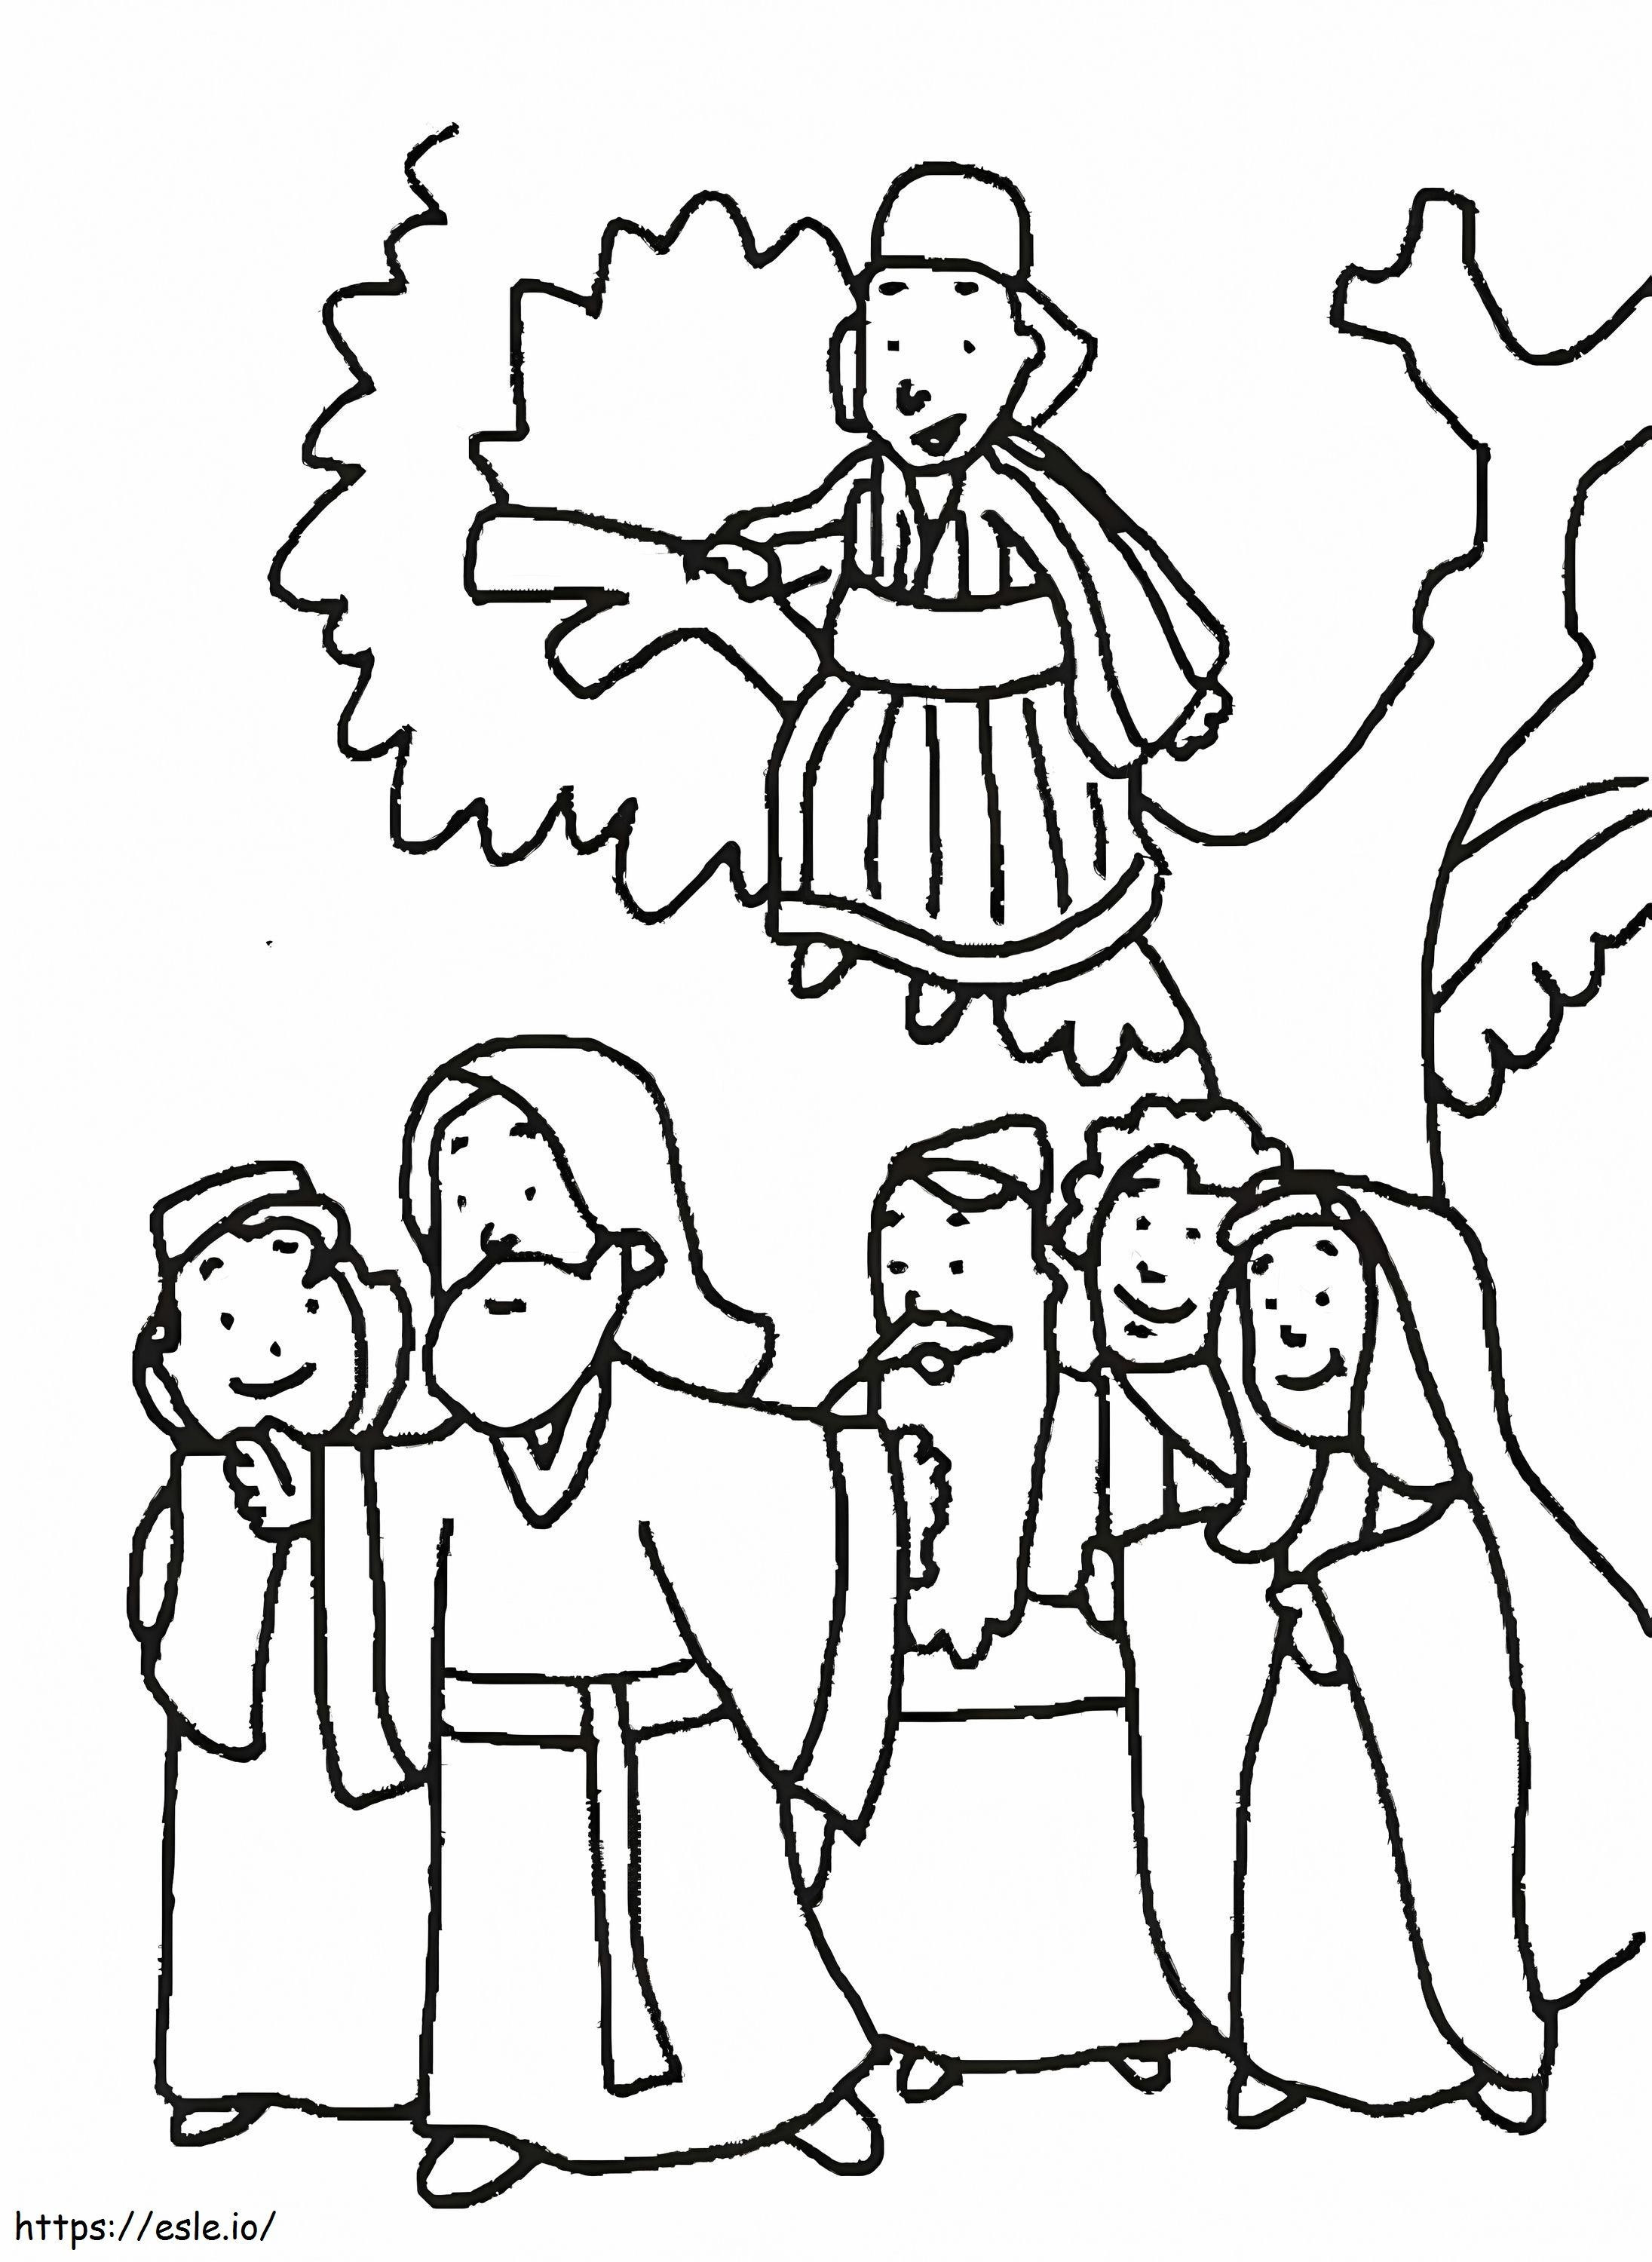 Zachäus am Baum und Zeichnung von Jesus ausmalbilder